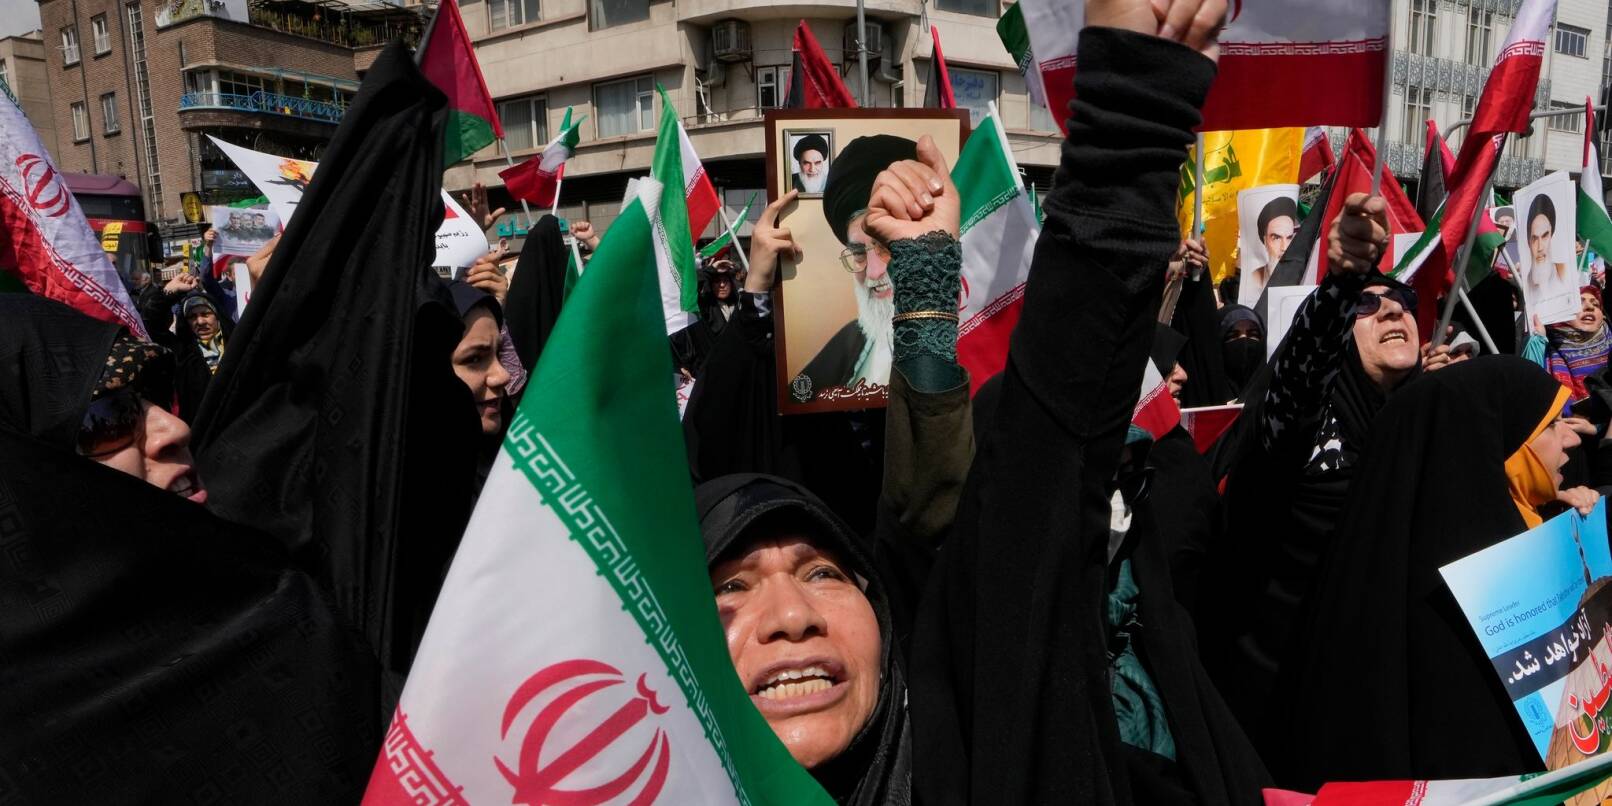 Gläubige skandieren Slogans während einer anti-israelischen Versammlung nach dem Freitagsgebet in Teheran. Nach dem mutmaßlich israelischen Angriff im Iran soll der Vorfall untersucht werden.